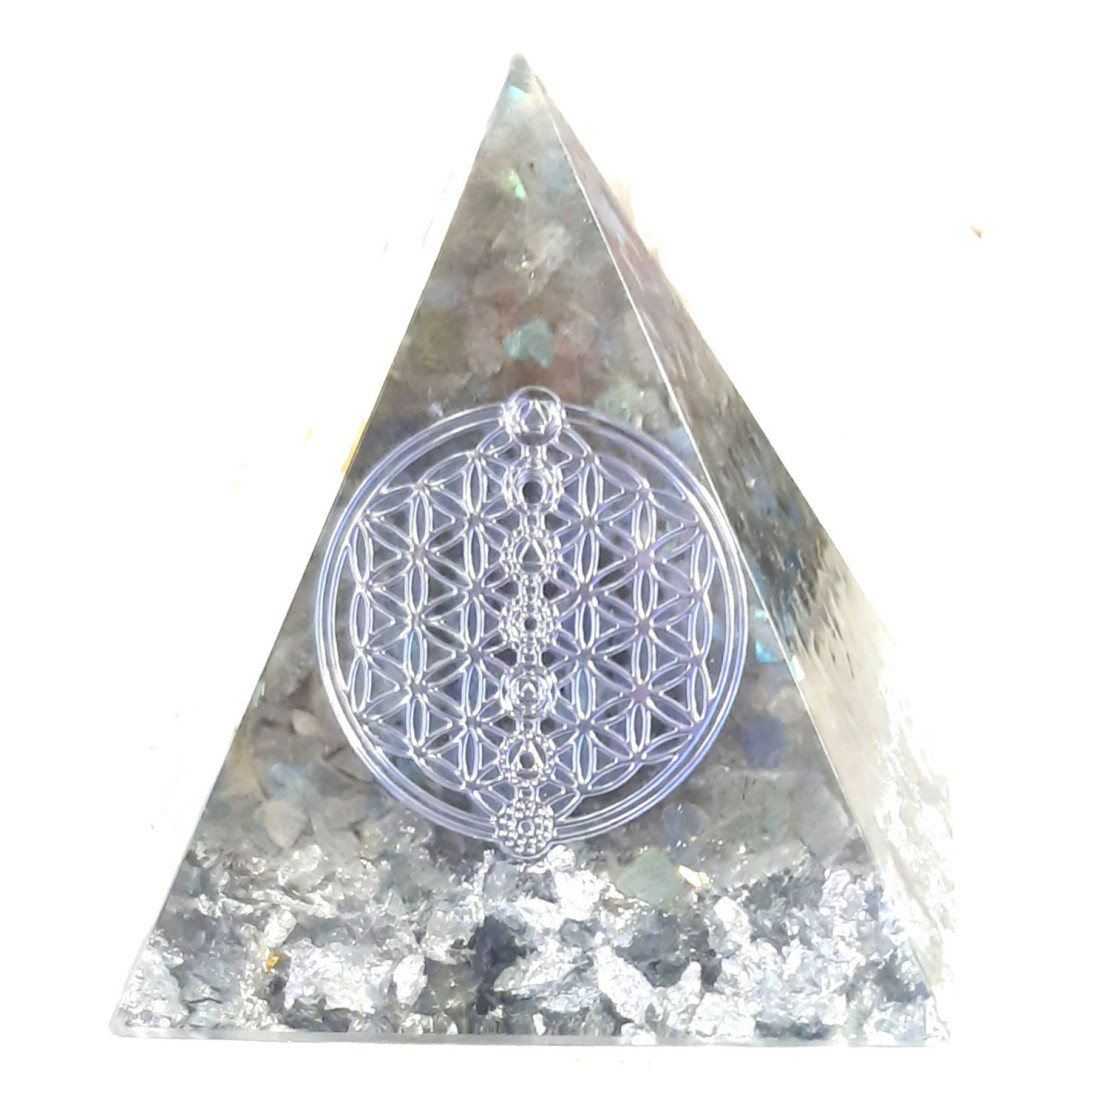 Pyramide orgonite orgone en résine et galets labradorite motif fleur de vie de vie orgo13 6cm